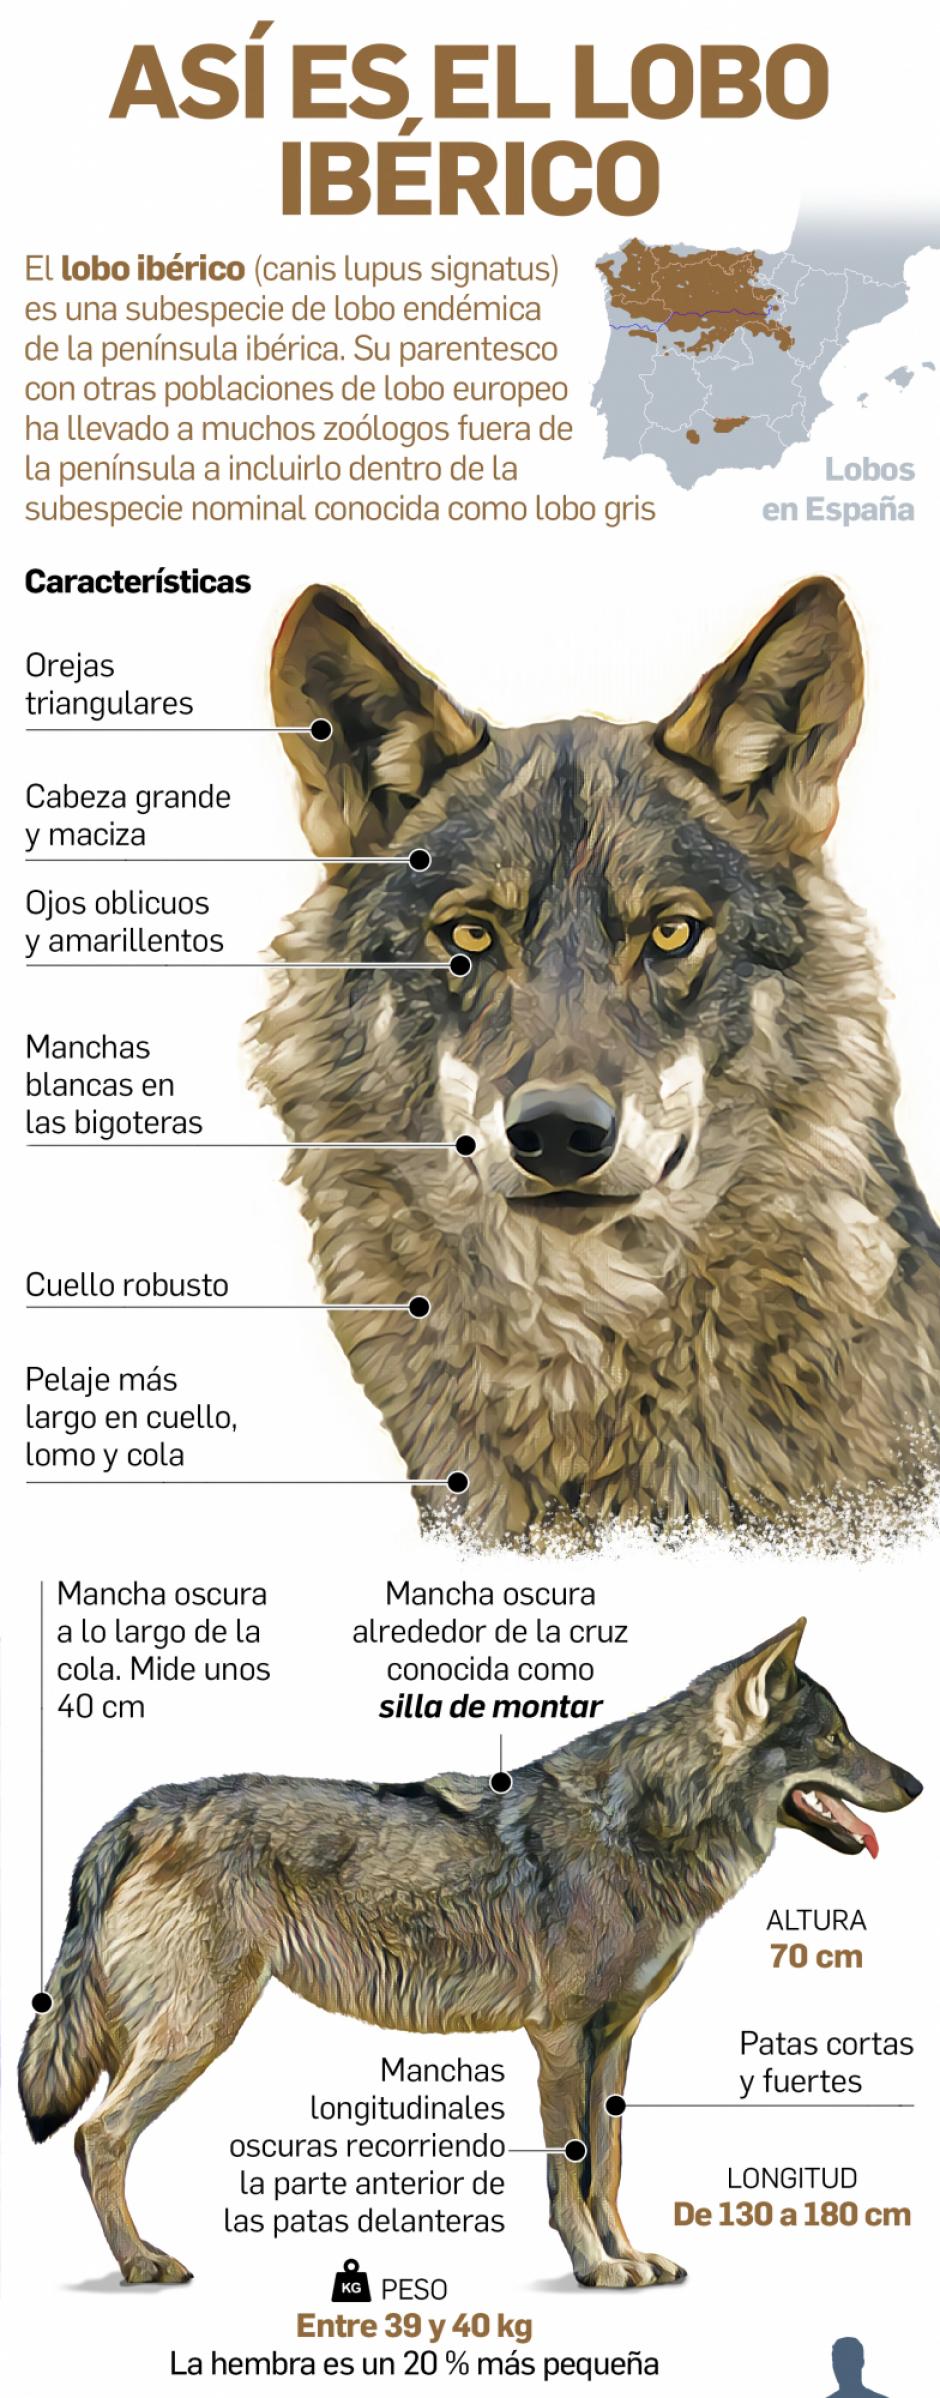 Medio Ambiente: El lobo se hace fuerte en la Sierra de Madrid